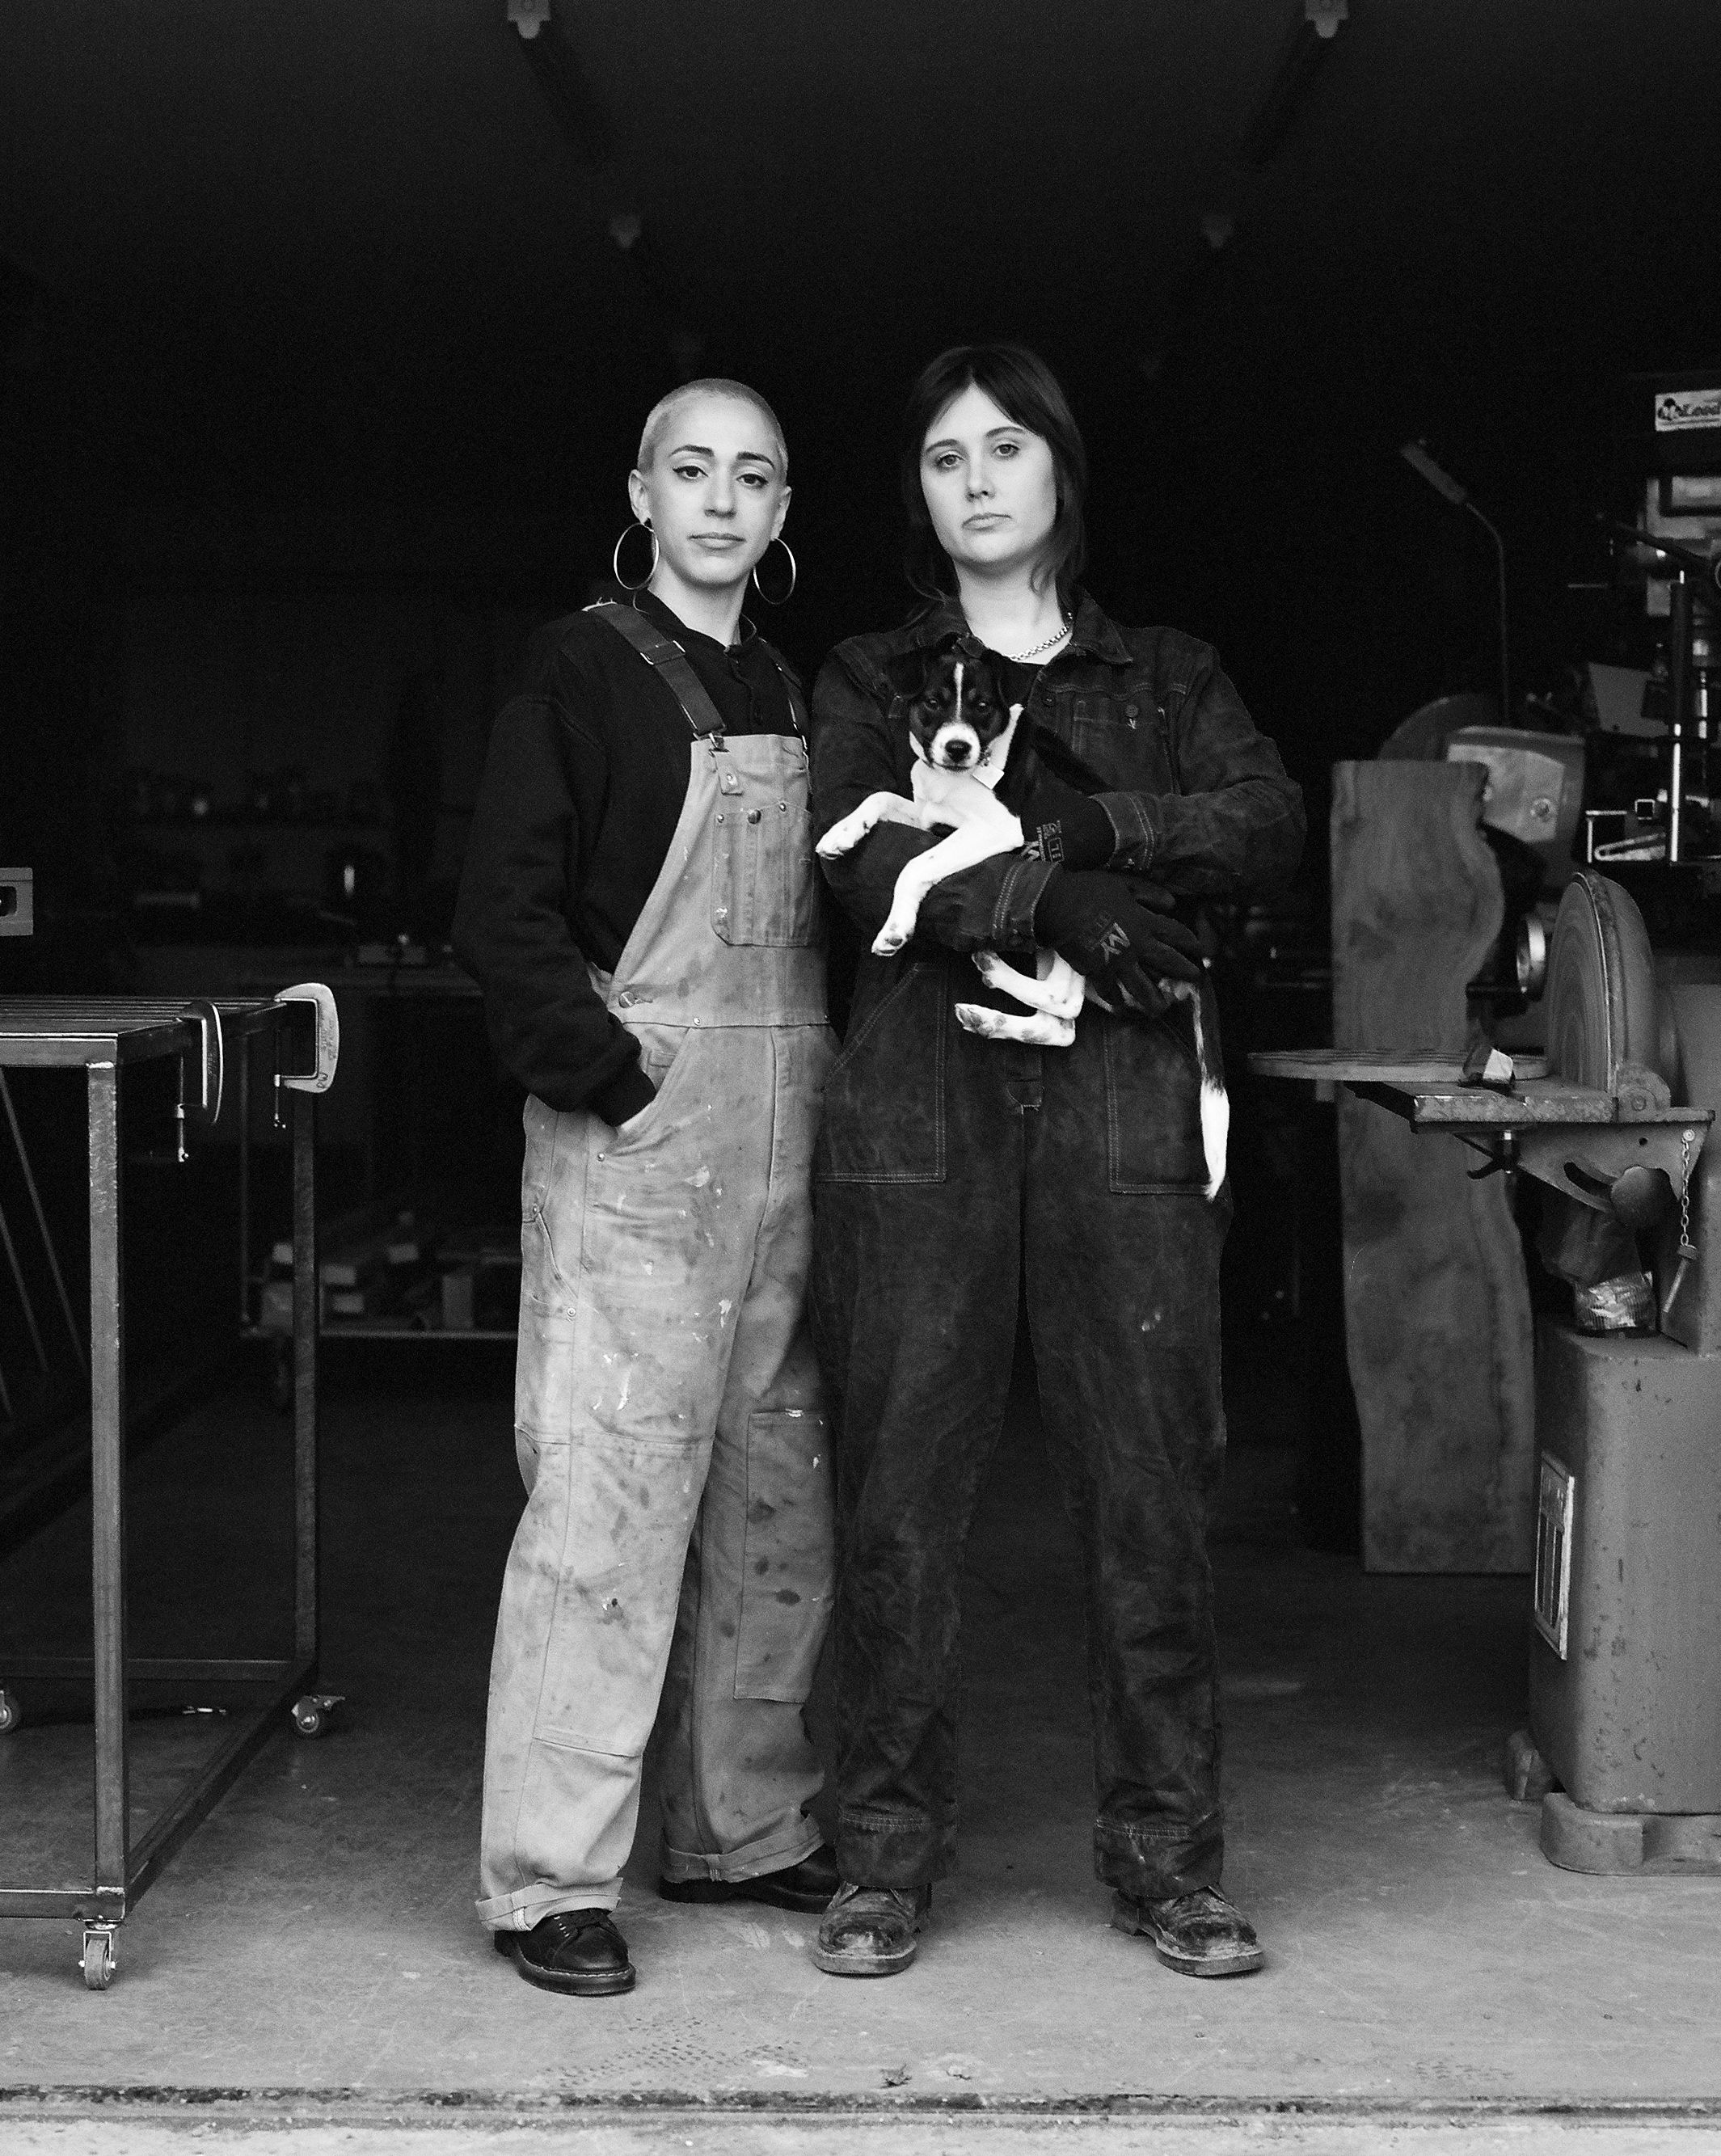 RubinoWilson founders Daniela Rubino and Lauren Wilson black and white portrait